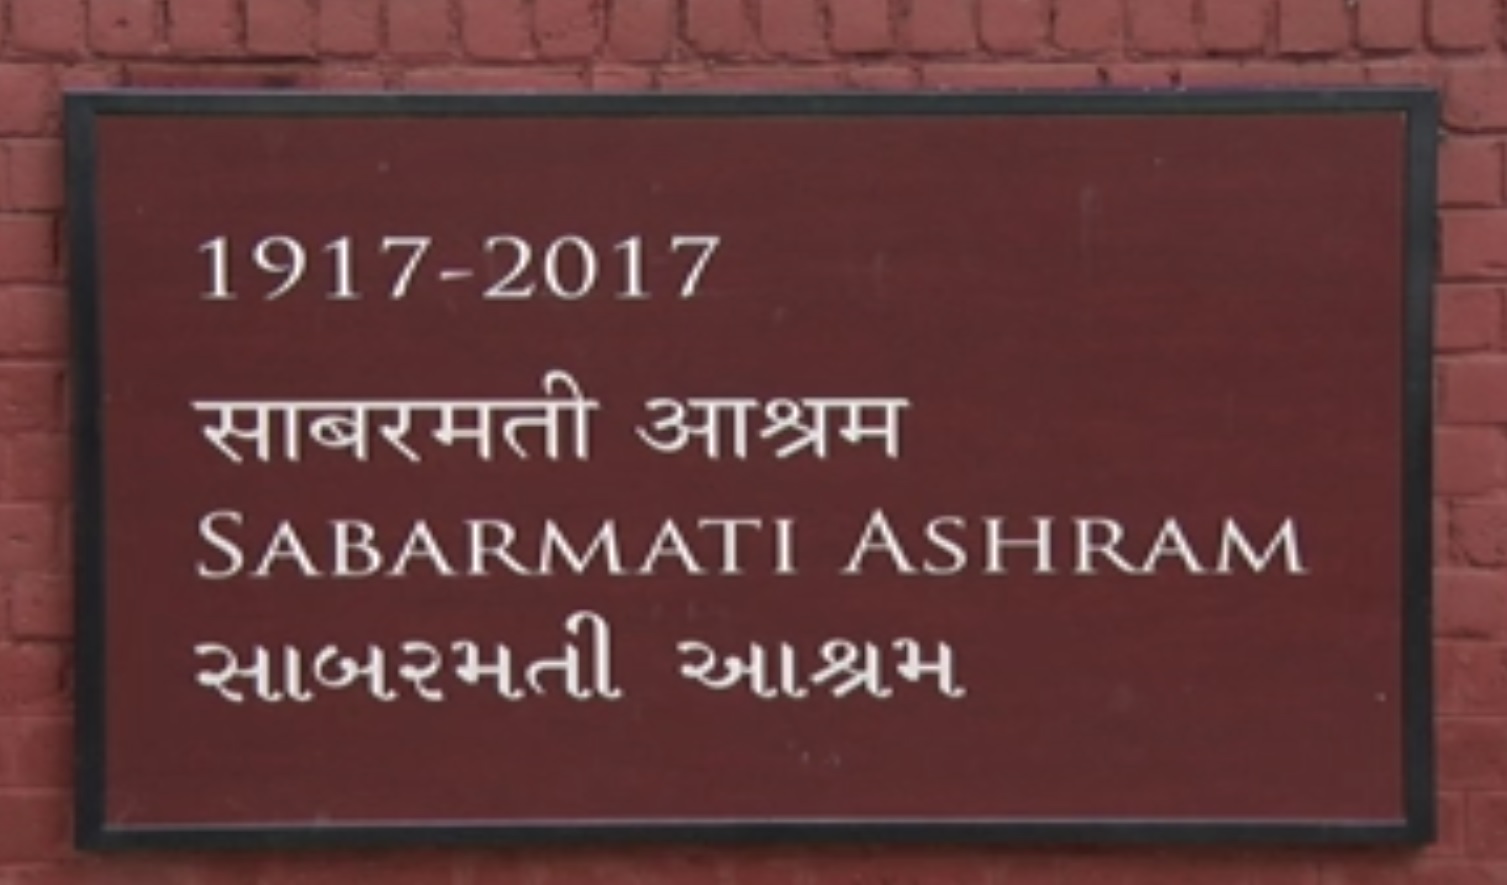 Sabarmati Ashram